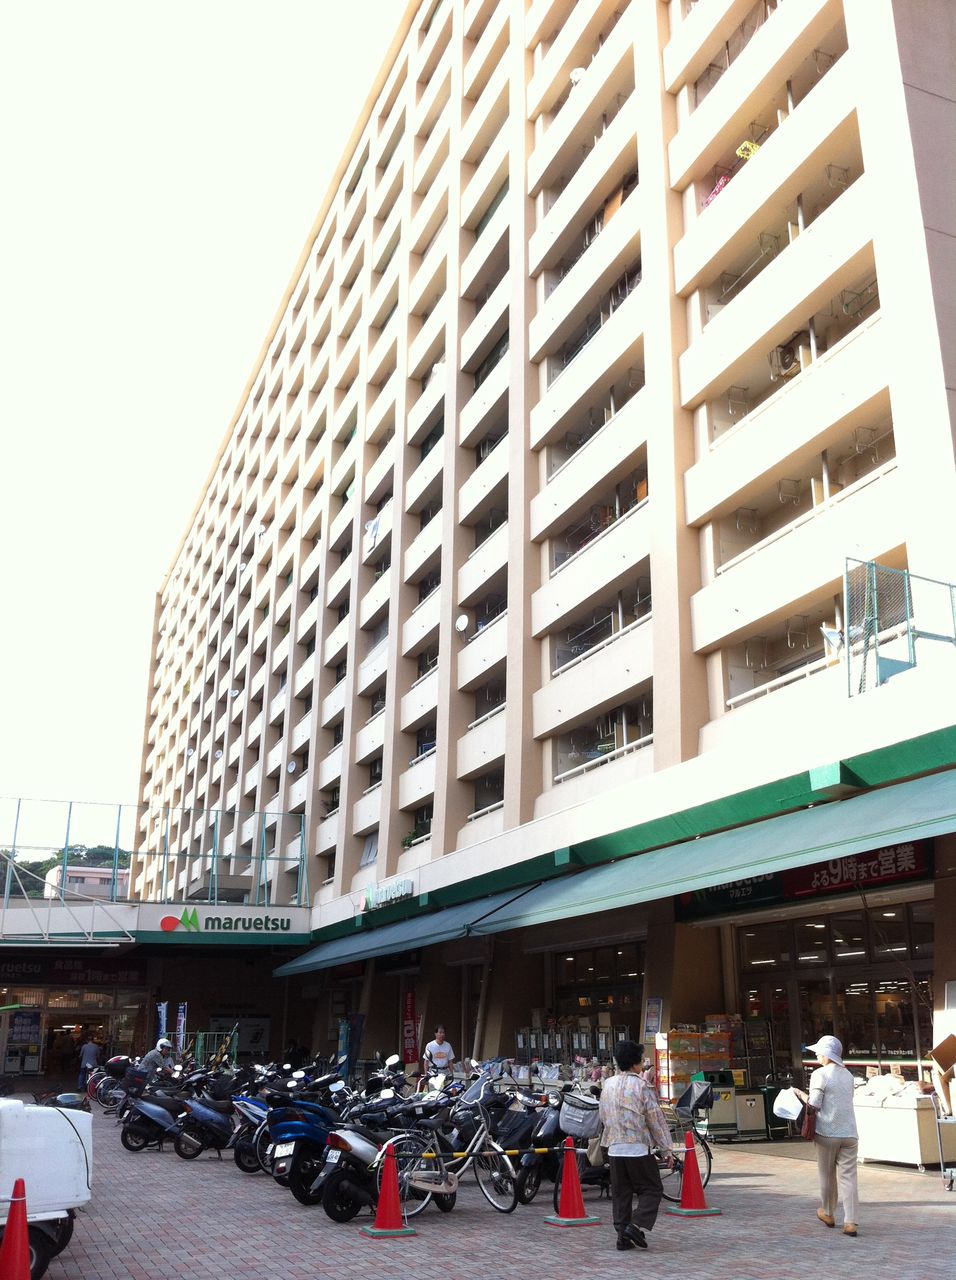 井土ヶ谷駅